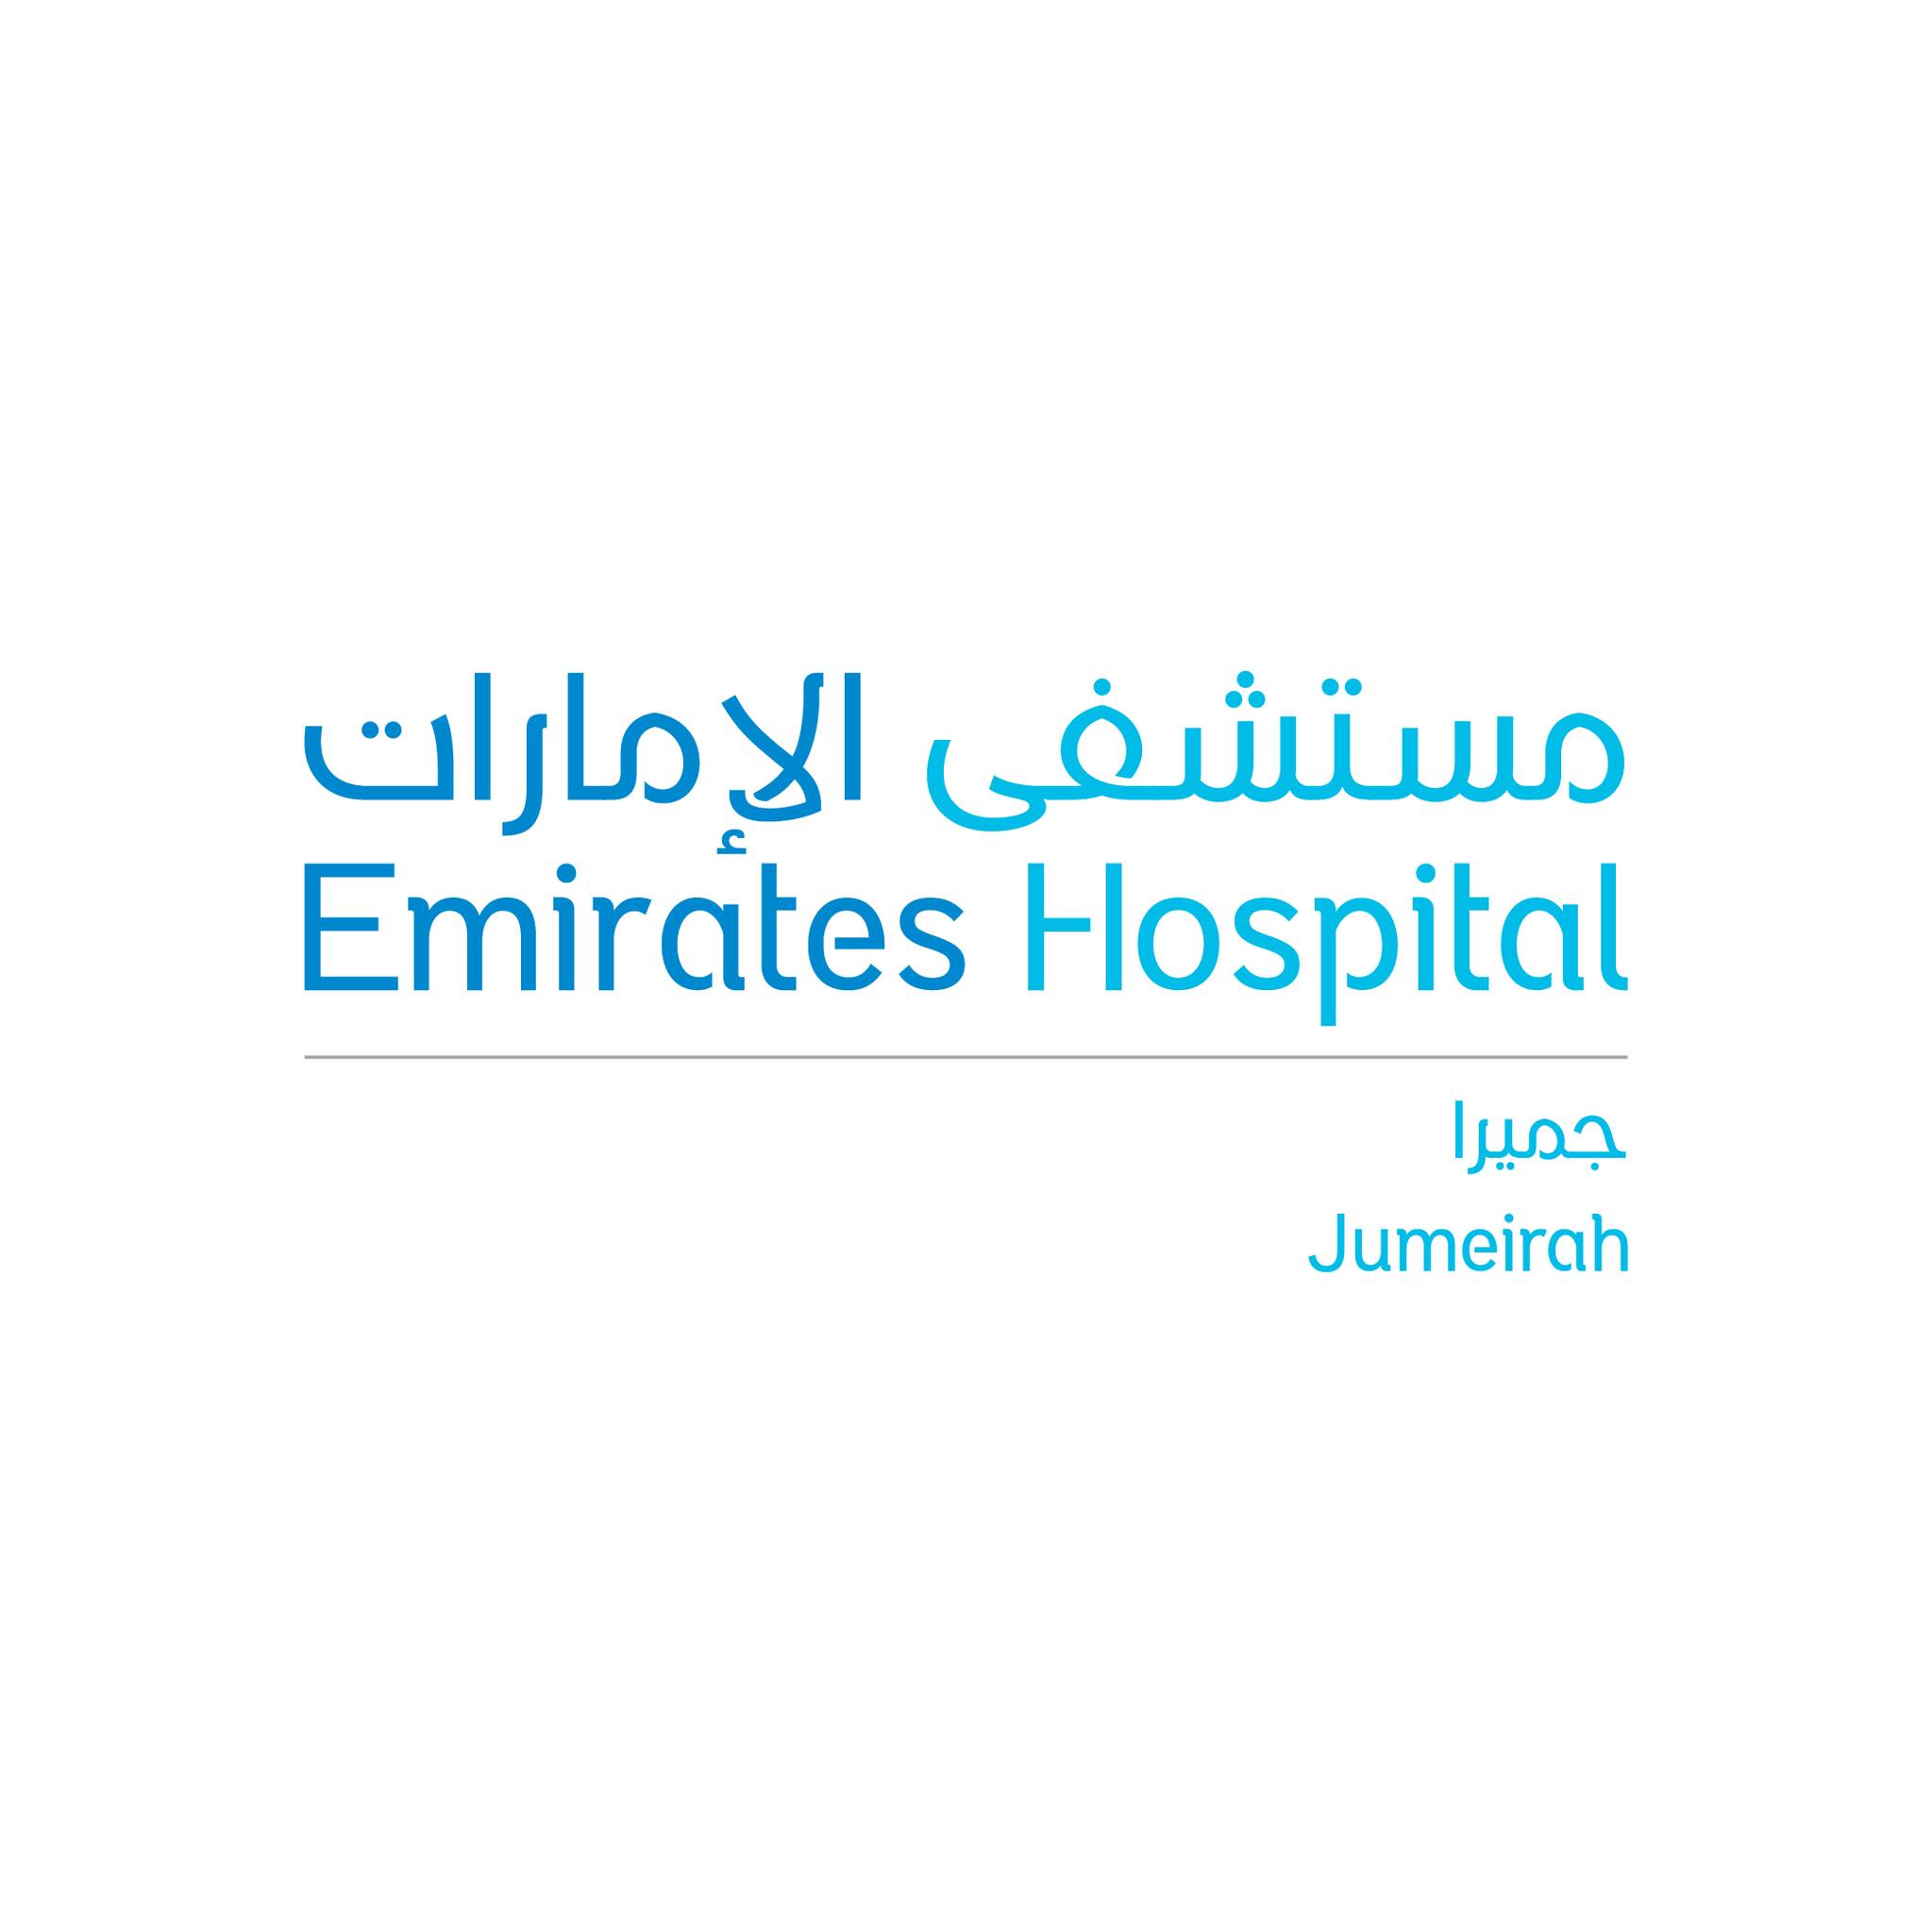 Emirates Hospital Jumeirah